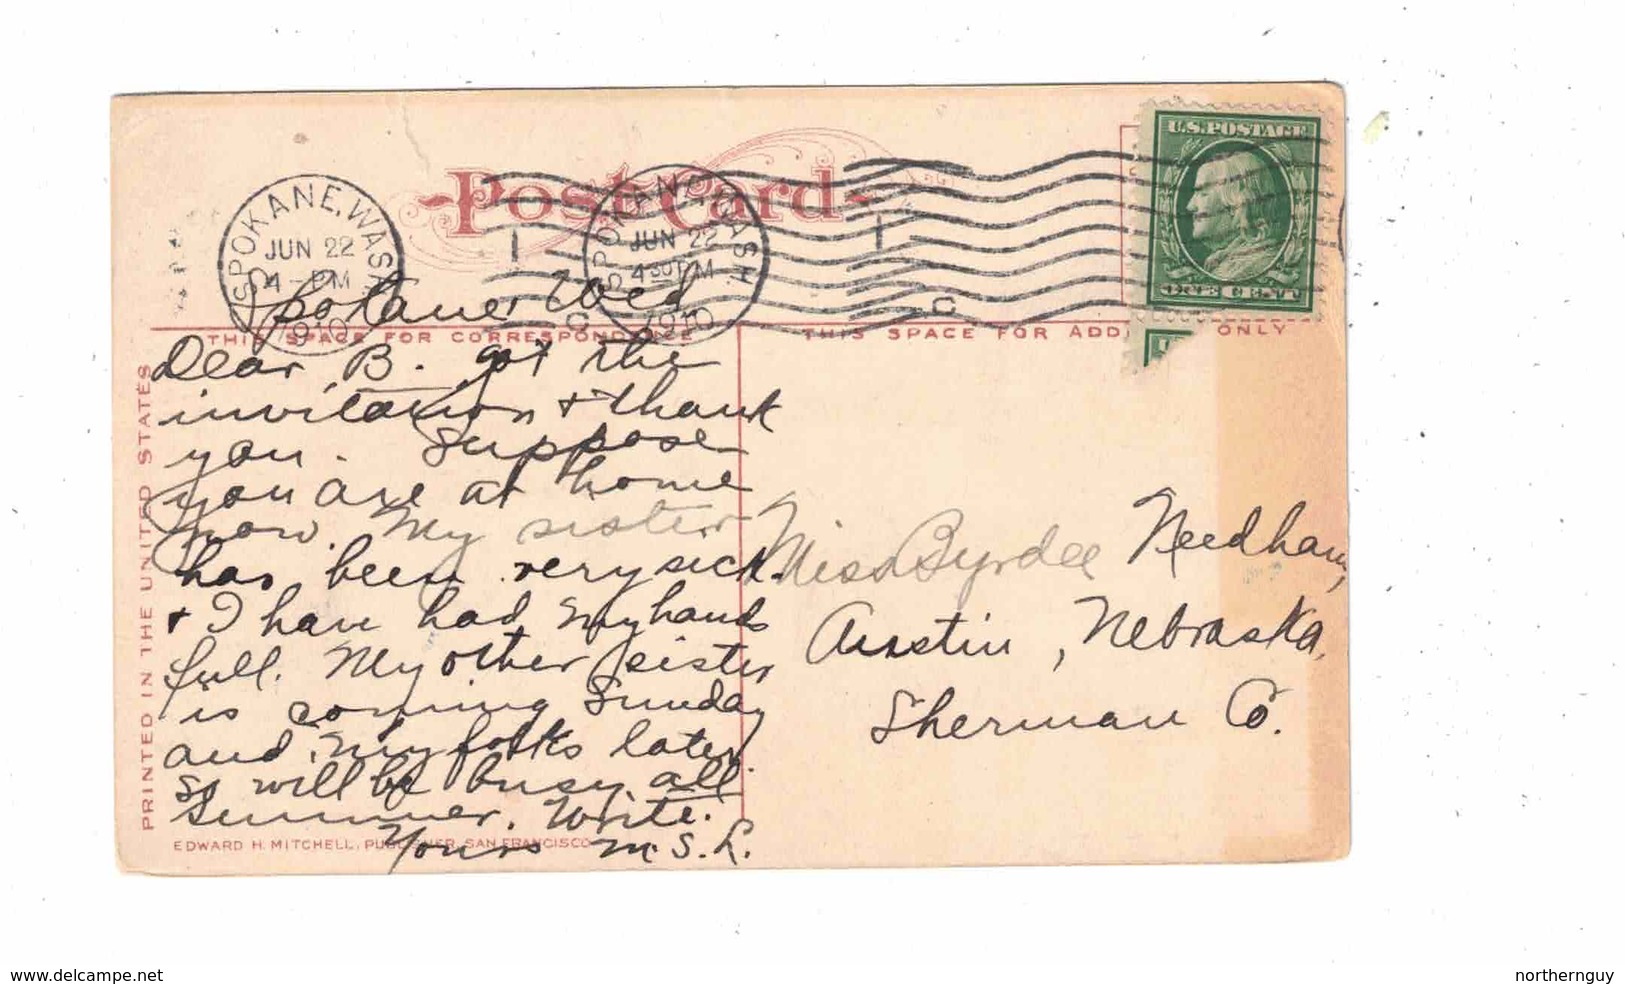 SPOKANE, Washington, USA, Bird's Eye View, Mt. Carleton, 1910 Mitchell Postcard - Spokane